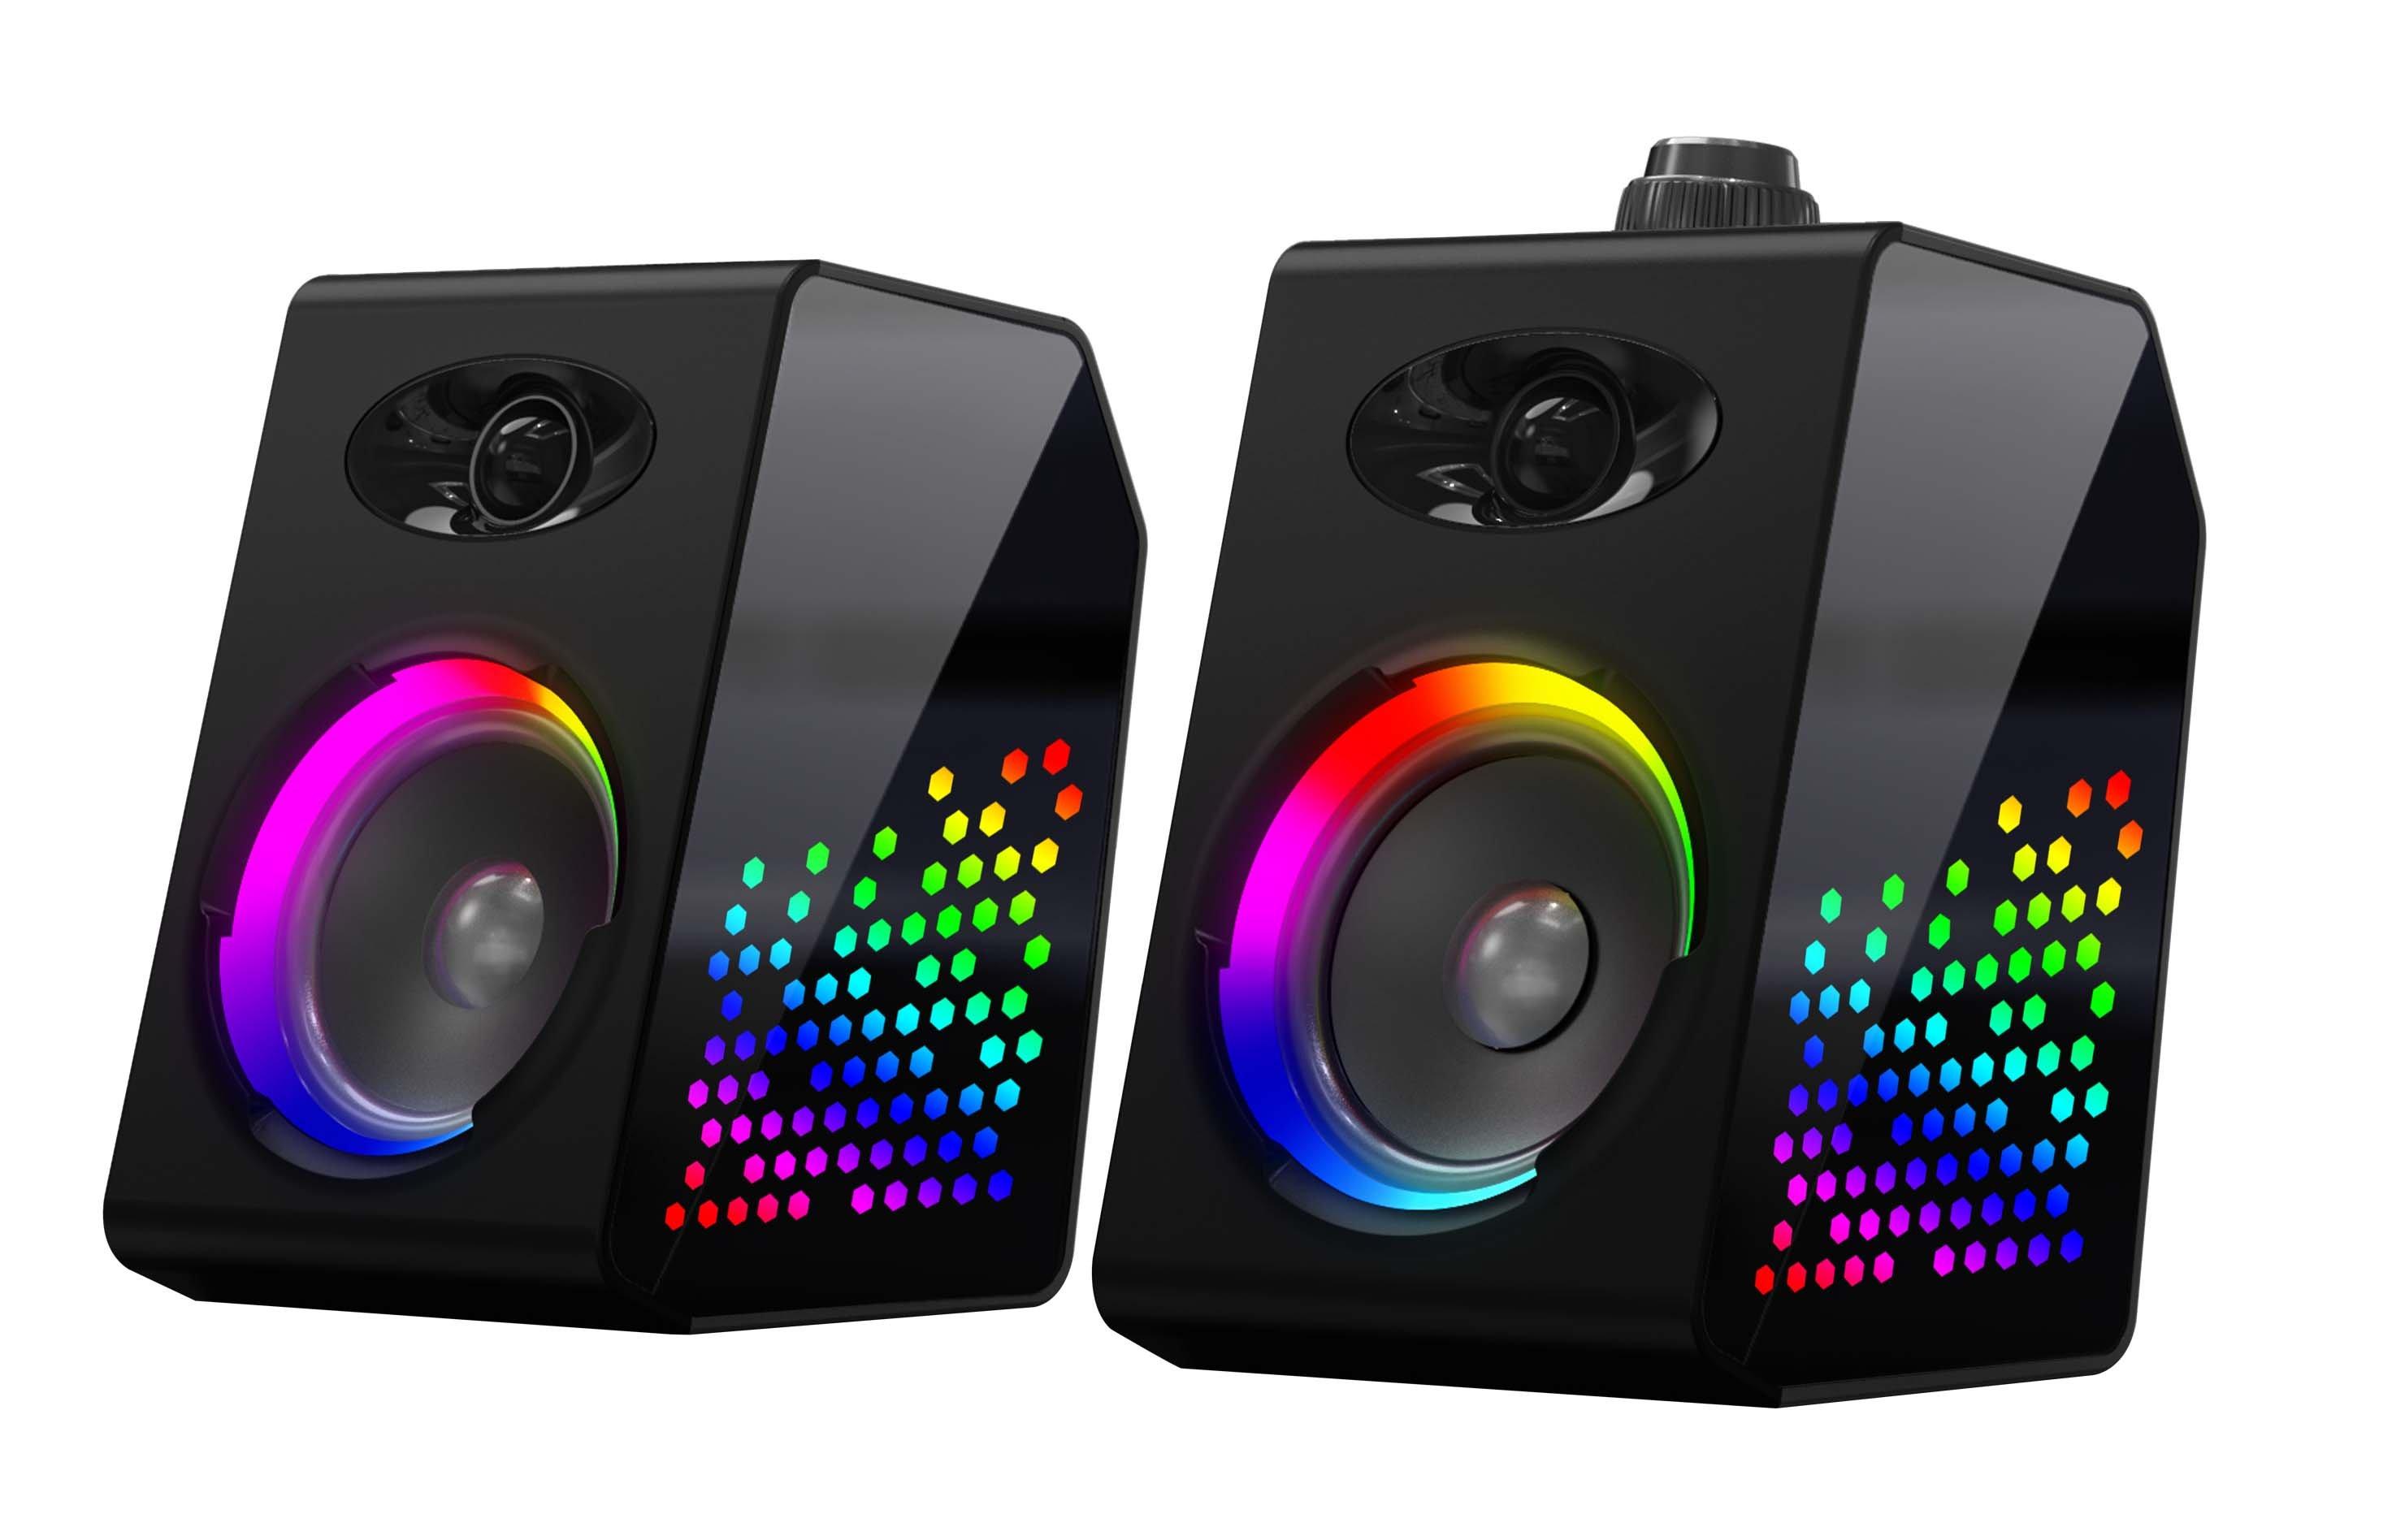 GameStop Bluetooth Gaming Speakers with RGB LED Lighting | GameStop